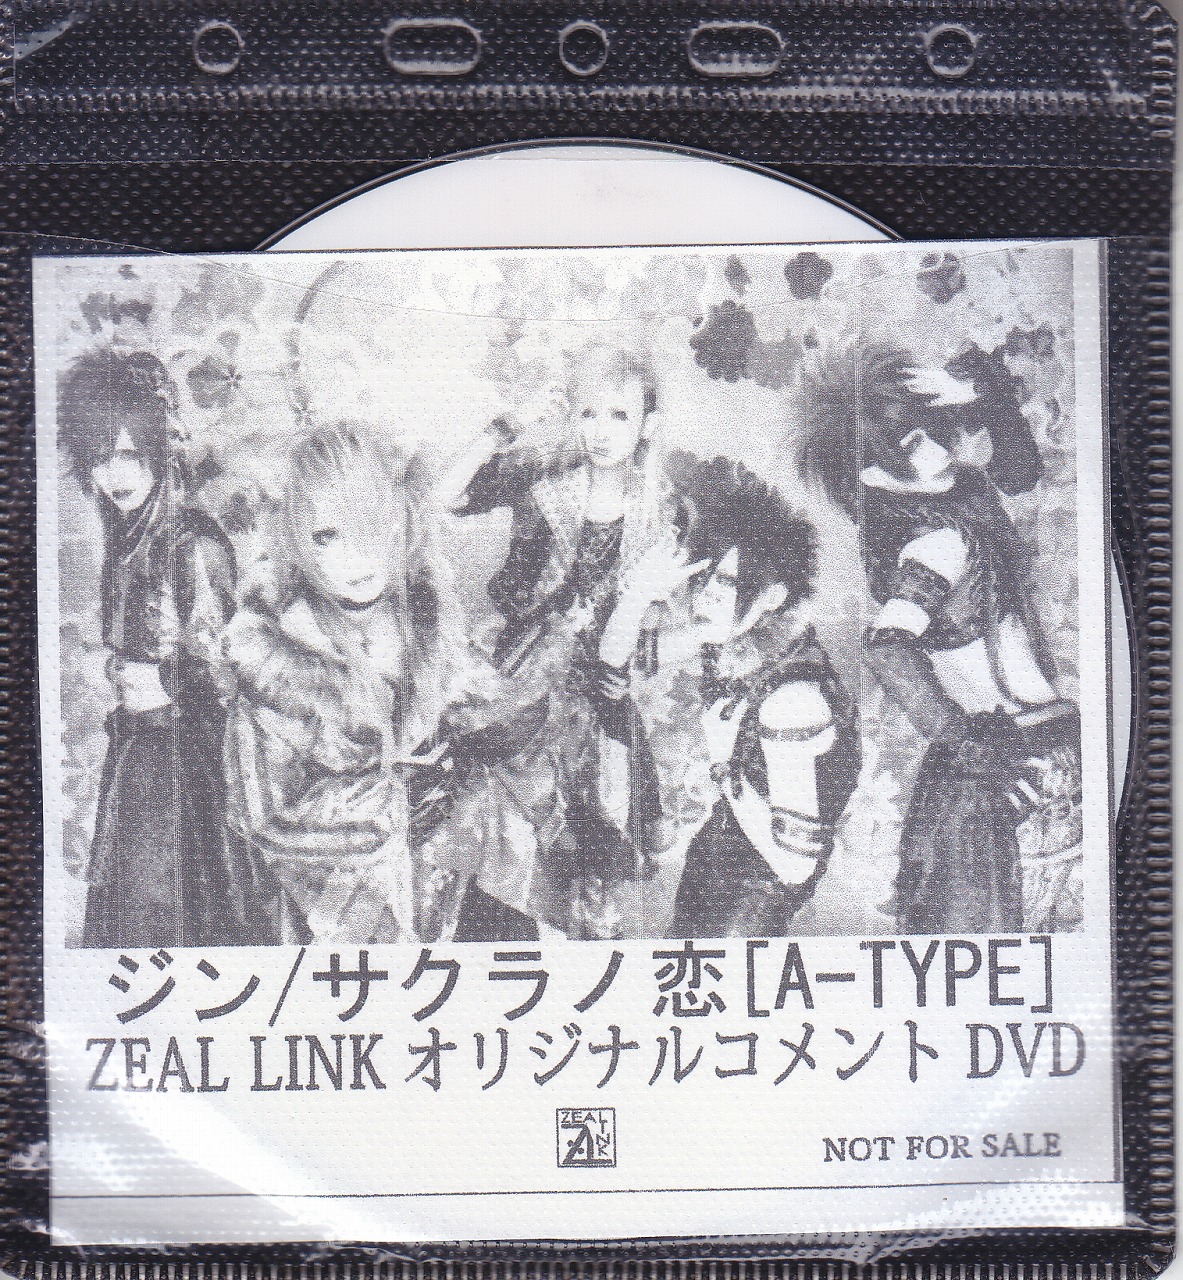 ジン ( ジン )  の DVD 【ZEAL LINK】サクラノ恋 A-TYPE ZEAL LINKオリジナルコメントDVD